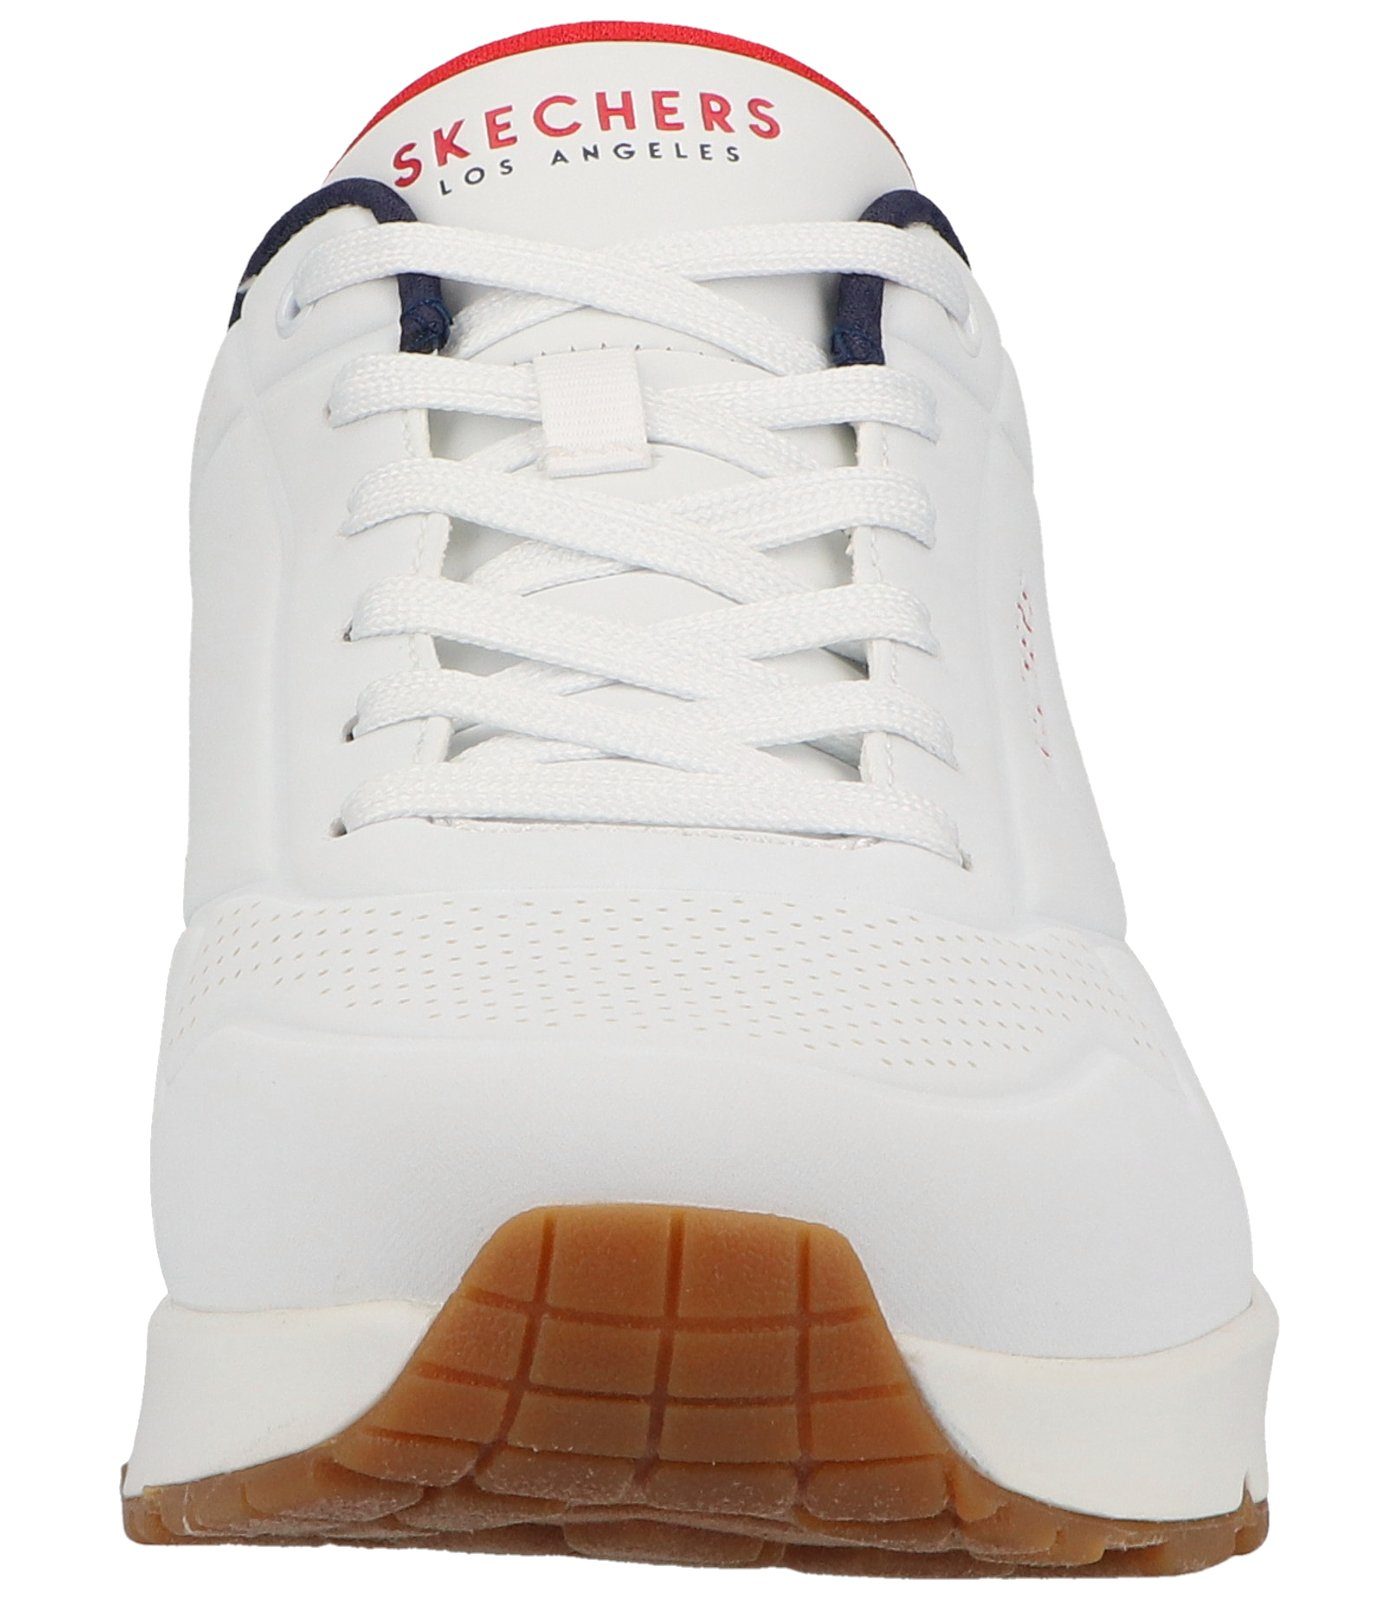 Skechers Sneaker Sneaker Lederimitat white/navy/red